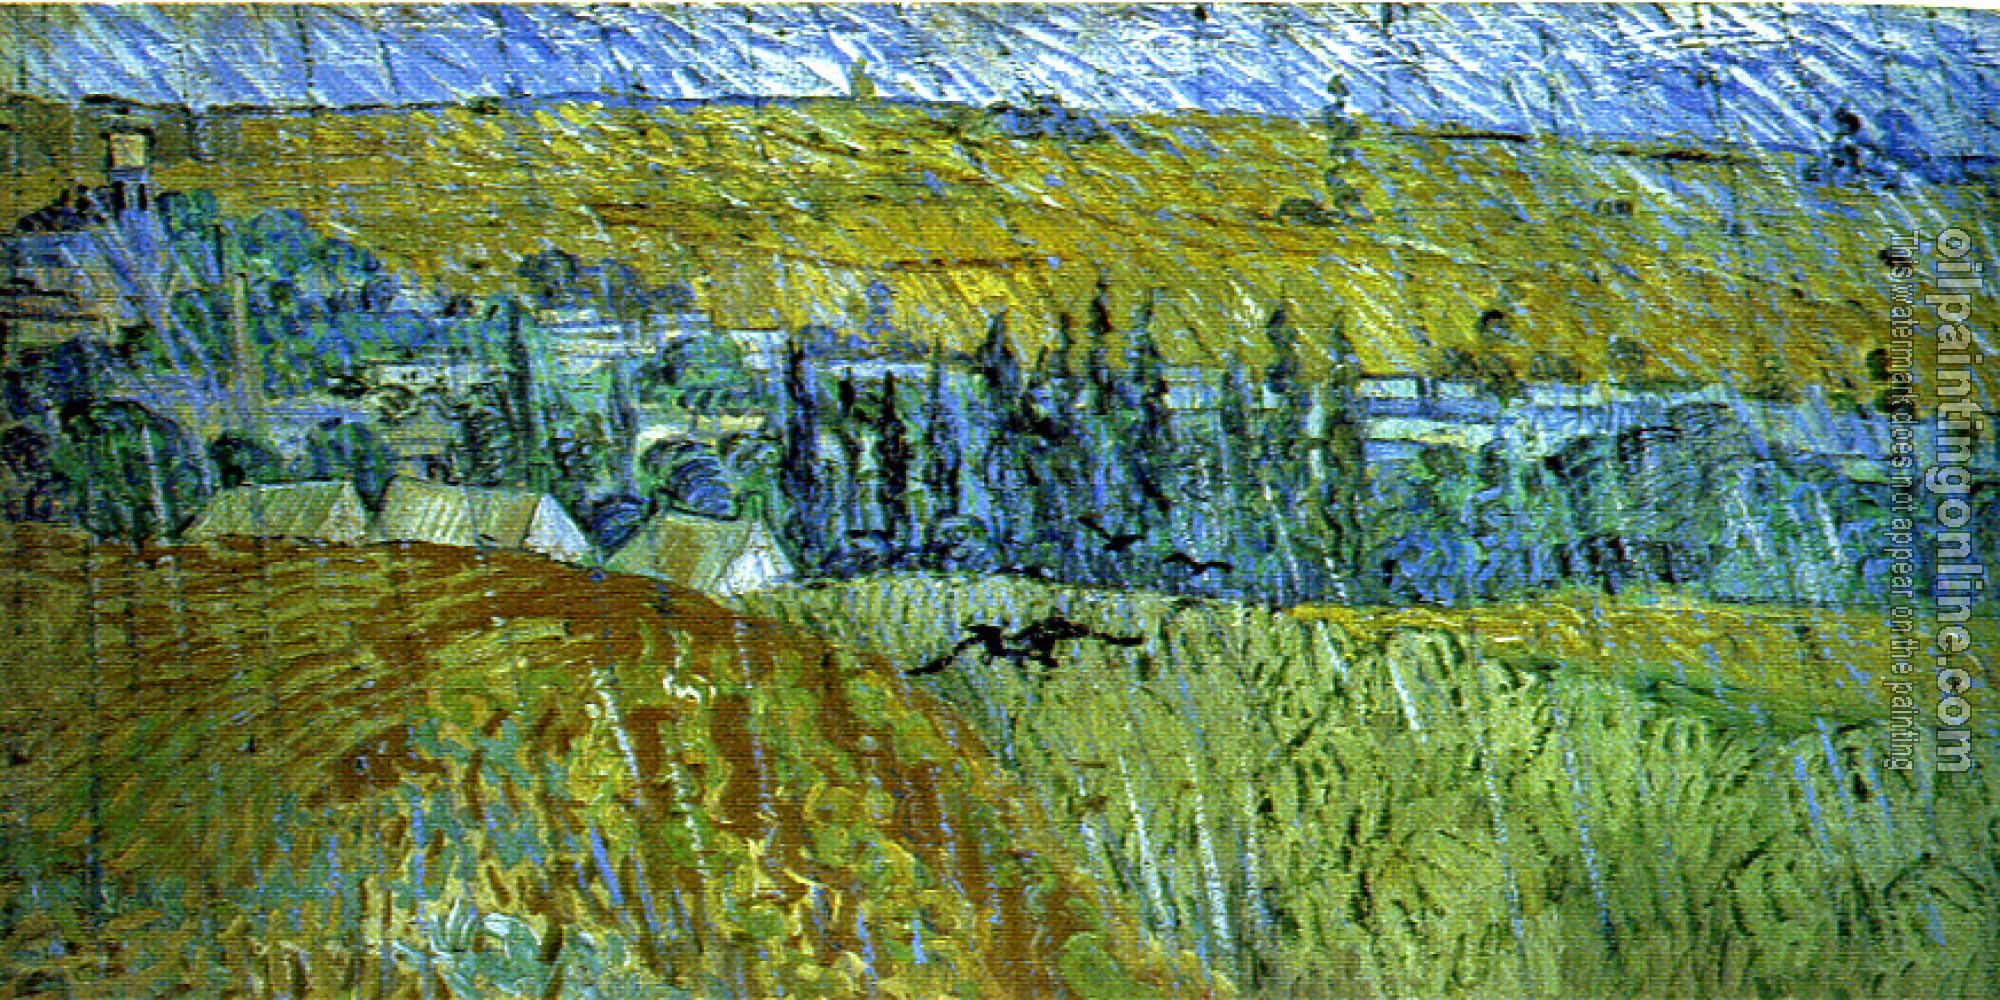 Gogh, Vincent van - Landscape in the Rain